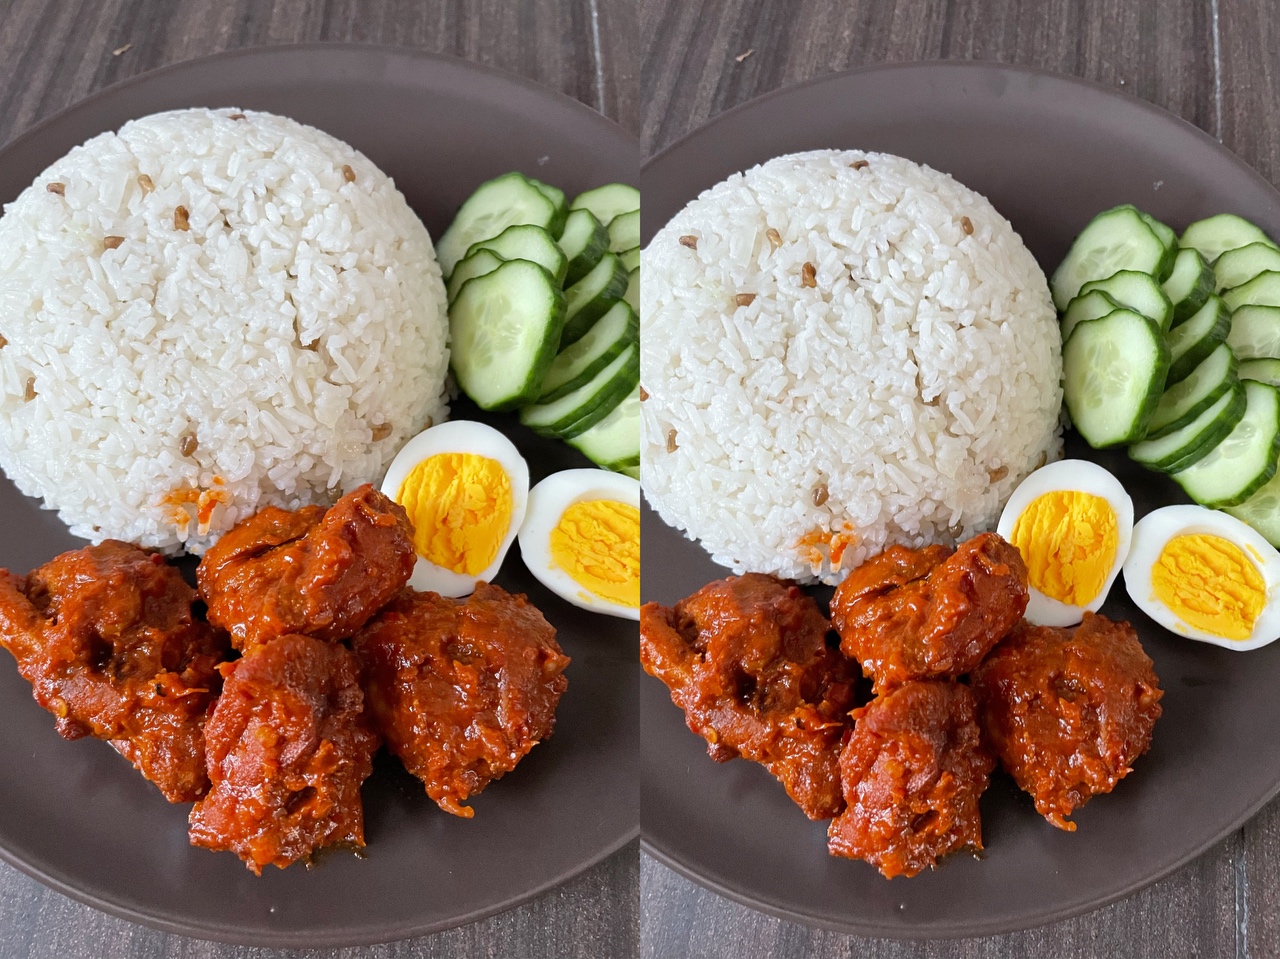 马来红辣鸡椰浆饭 nasi lemak ayam masak merah的做法 步骤8